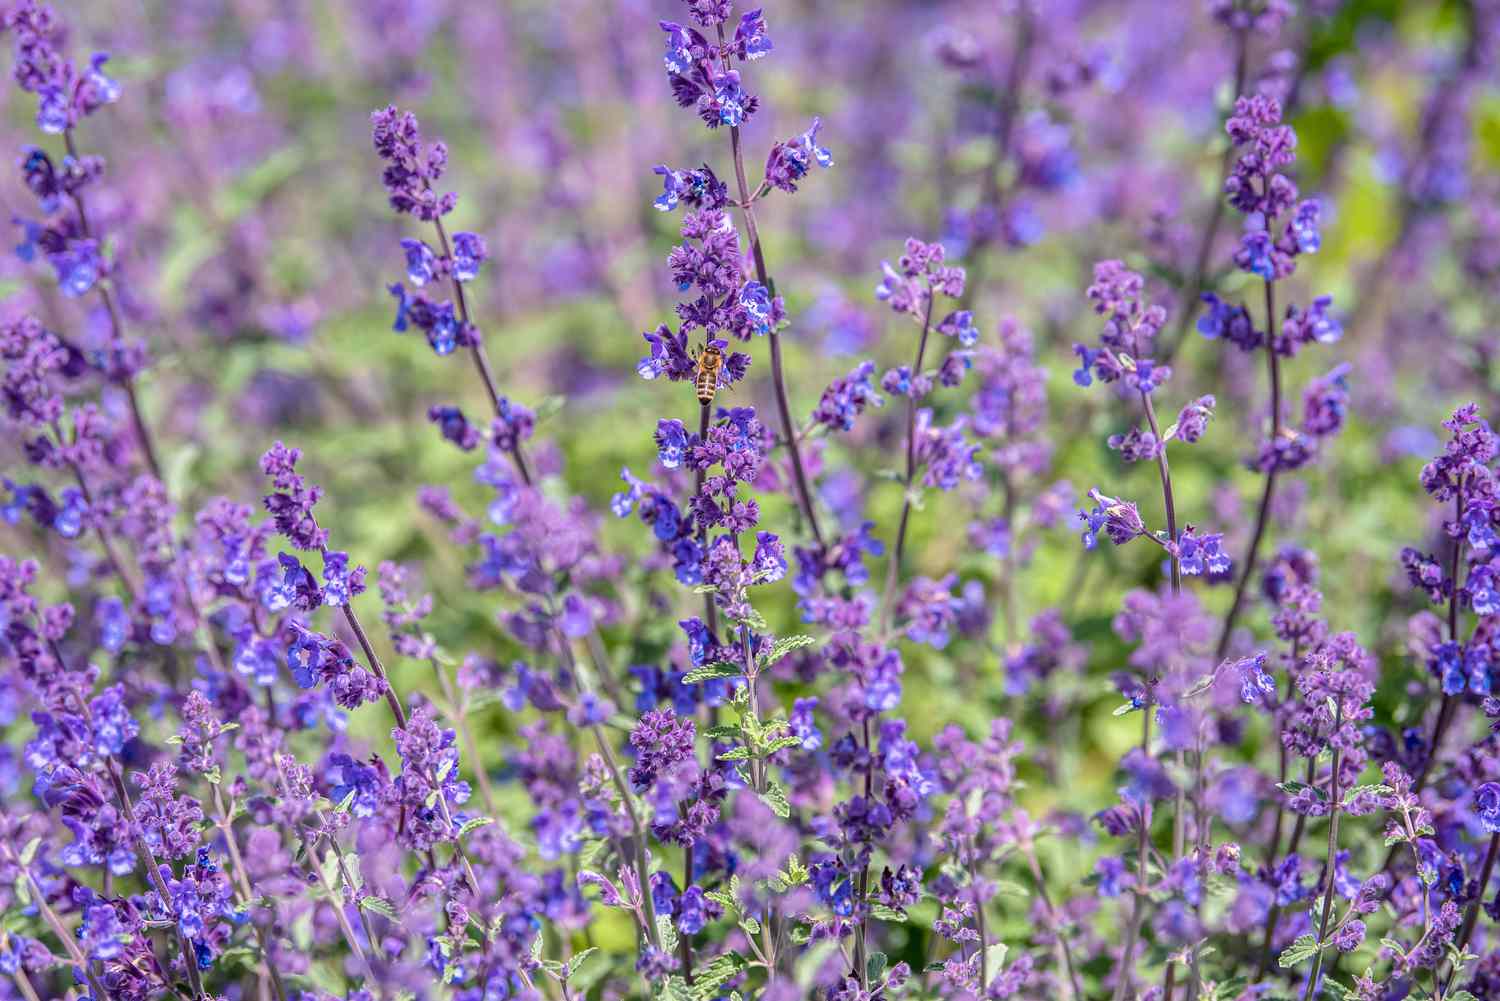 Planta de hierbabuena con tallos finos y pequeñas flores azul-púrpura